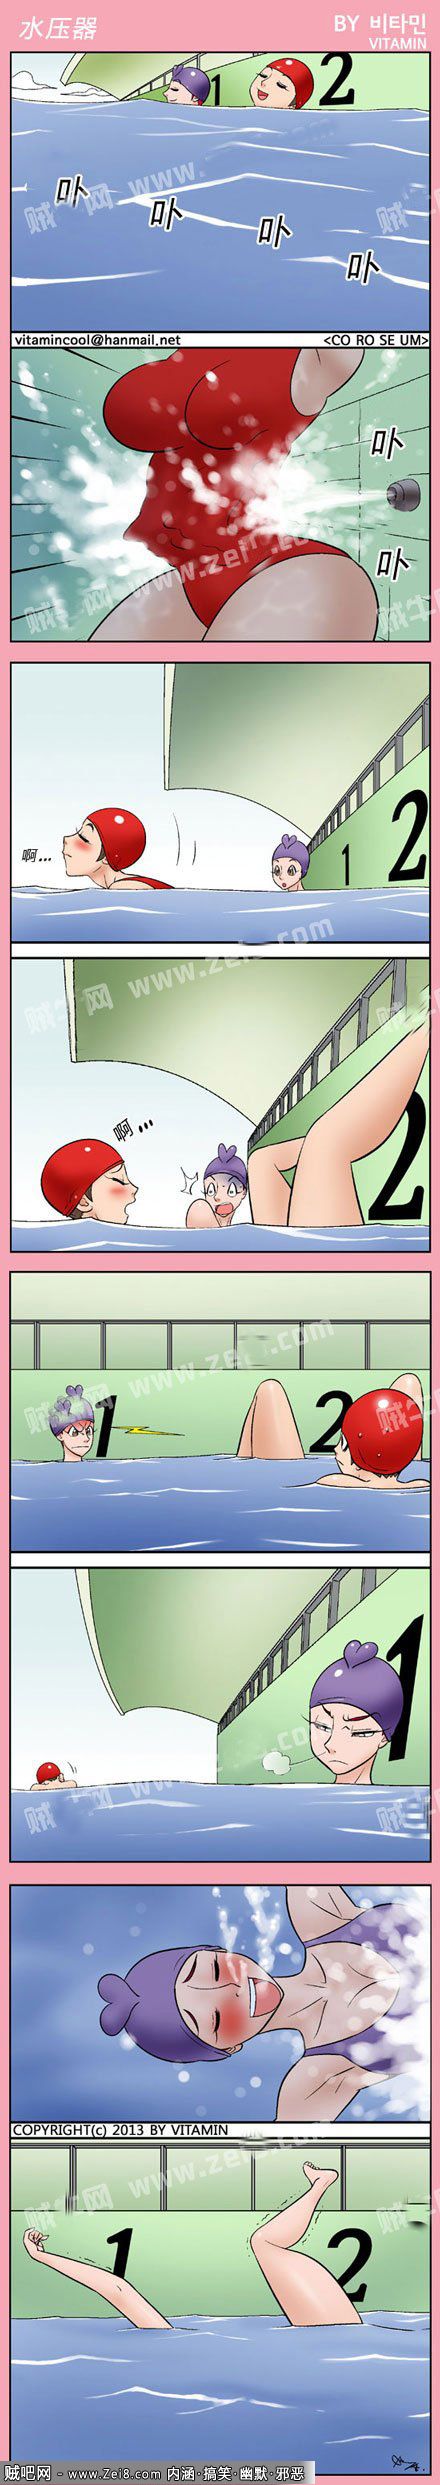 【色系军团邪恶漫画系列】游泳池的秘密